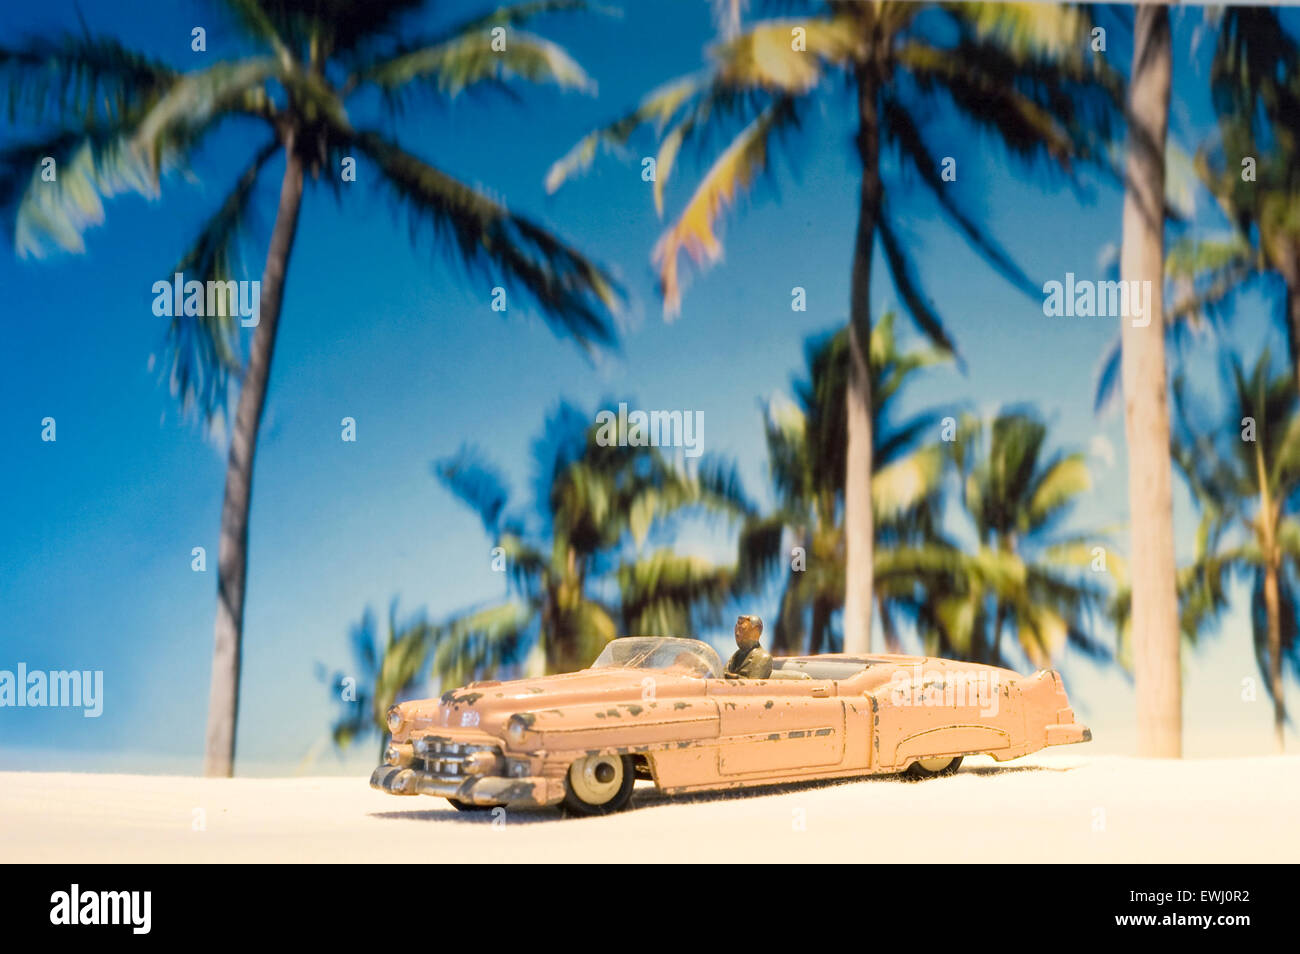 Ein abgenutztes und zerschmettertes pinkfarbenes Cadillac Dinky Auto Spielzeug in einer tropischen Umgebung mit Palmen am Strand Stockfoto